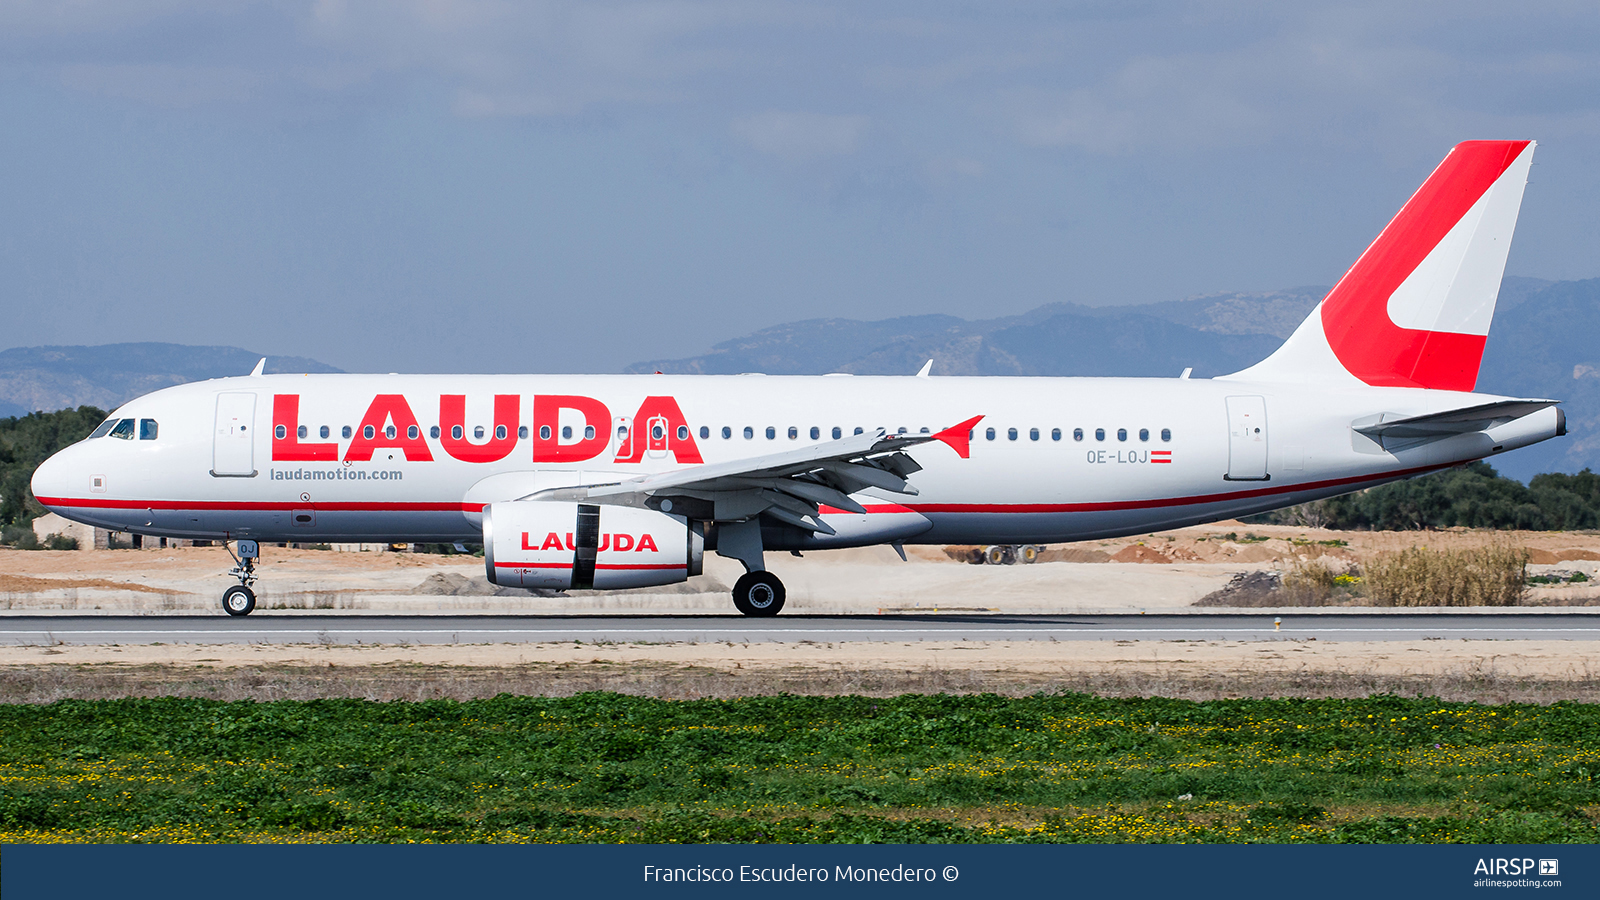 Laudamotion  Airbus A320  OE-LOJ